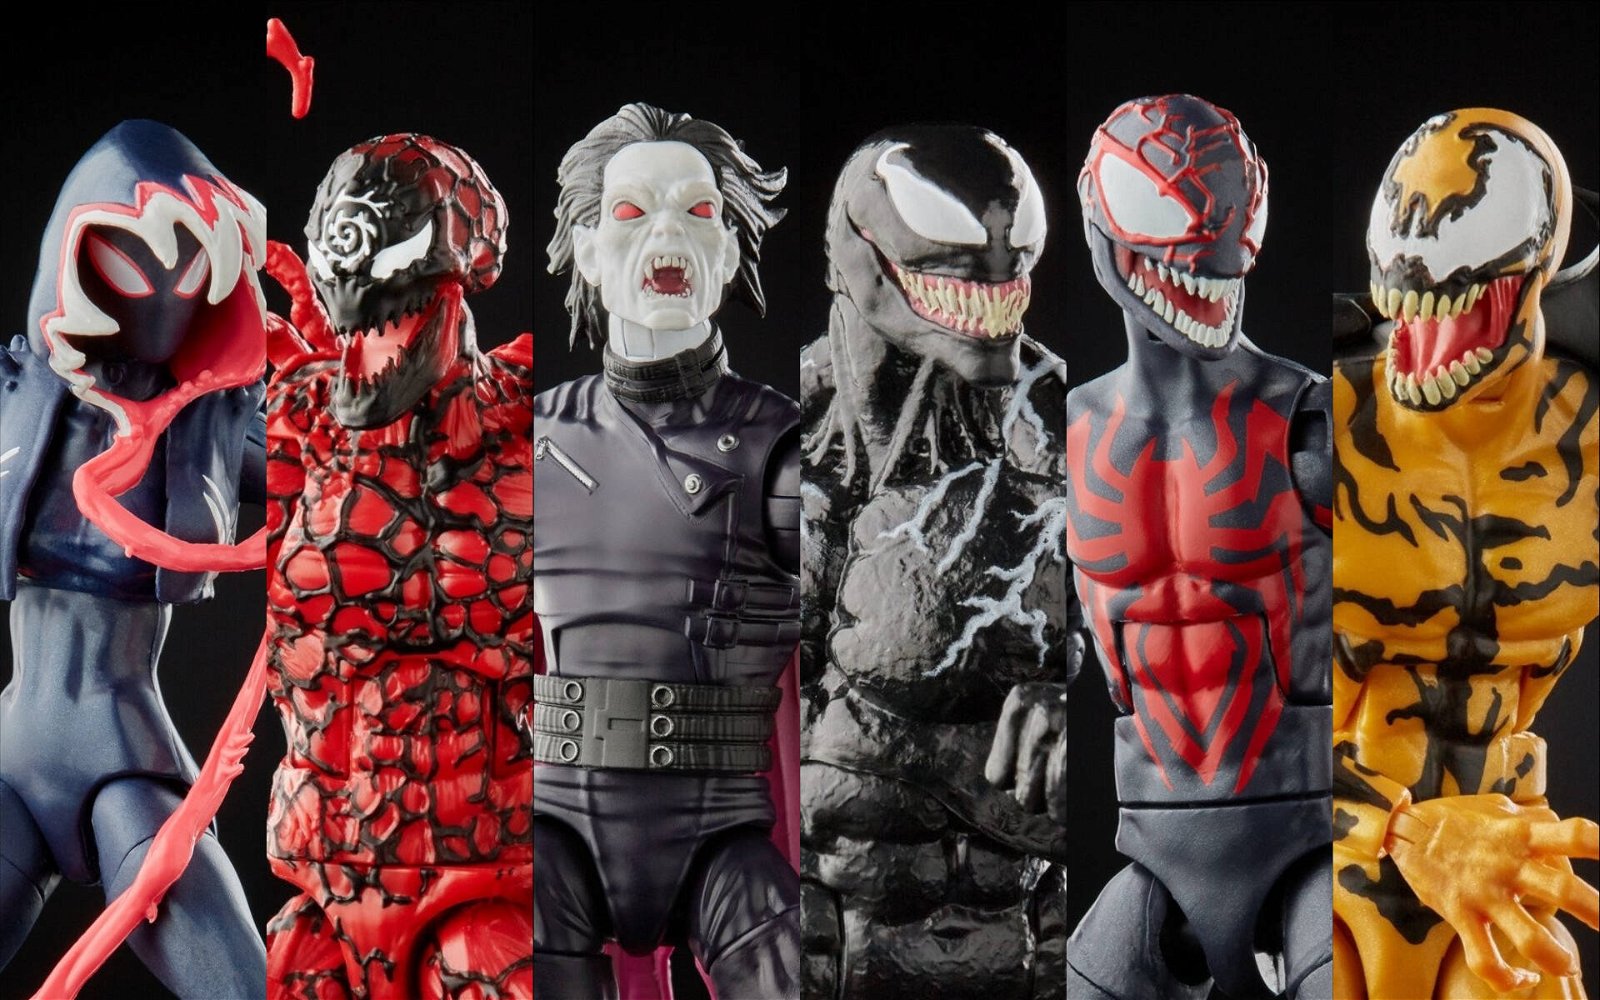 Immagine di Venom, da Hasbro arrivano le nuove Marvel Legends